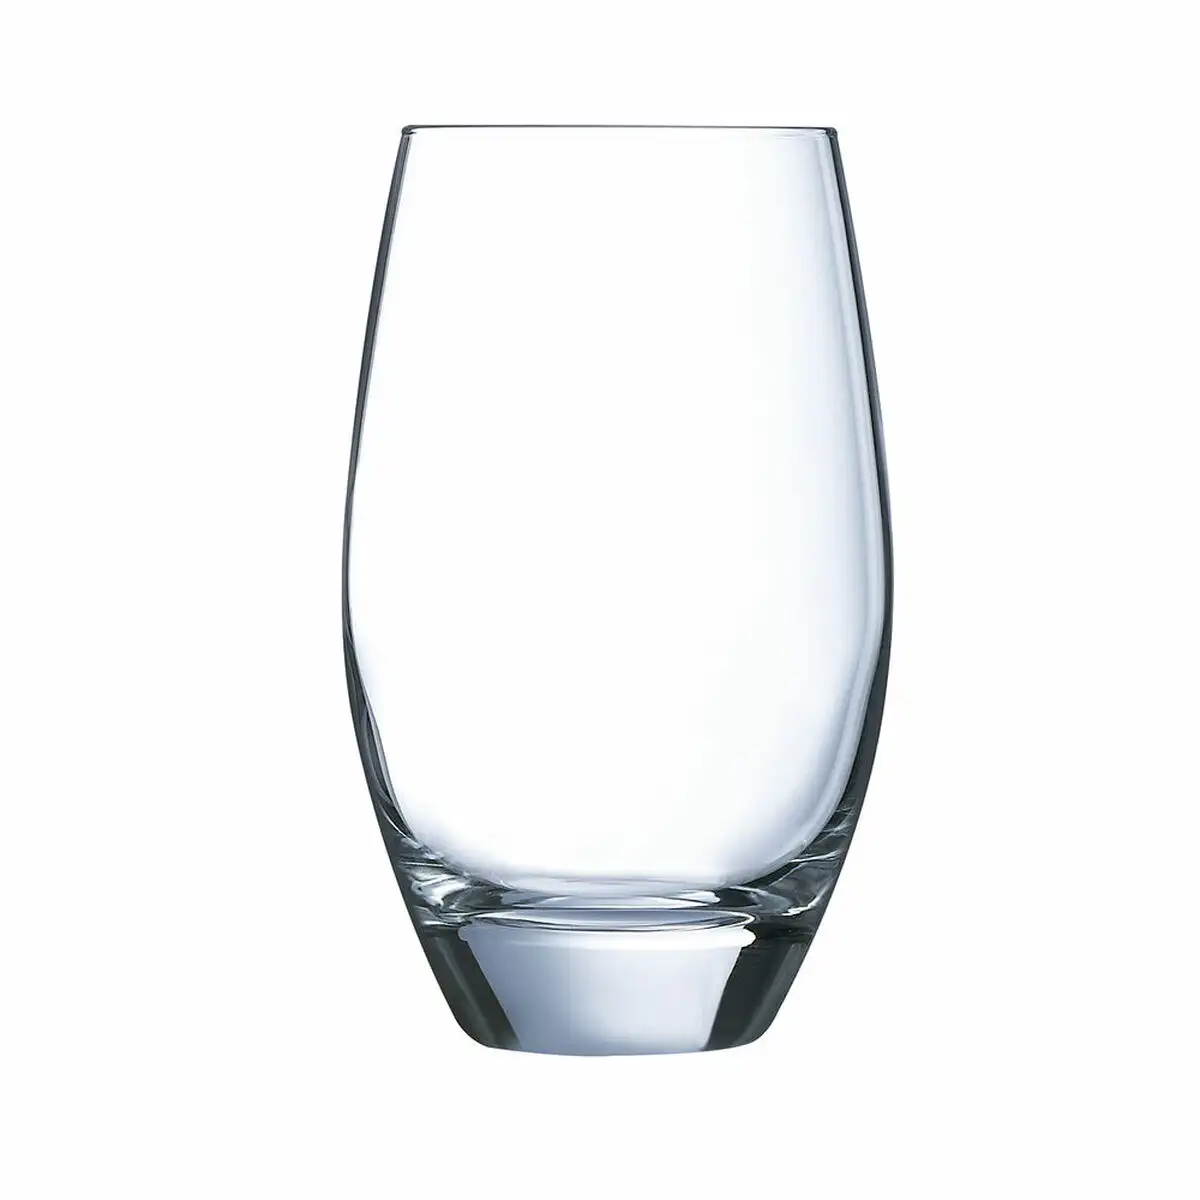 Ensemble de verres arcoroc malea 6 unite s verre transparent 35 cl_3921. DIAYTAR SENEGAL - L'Artisanat à Portée de Clic. Découvrez notre boutique en ligne pour trouver des produits uniques qui célèbrent la créativité et l'artisanat sénégalais.